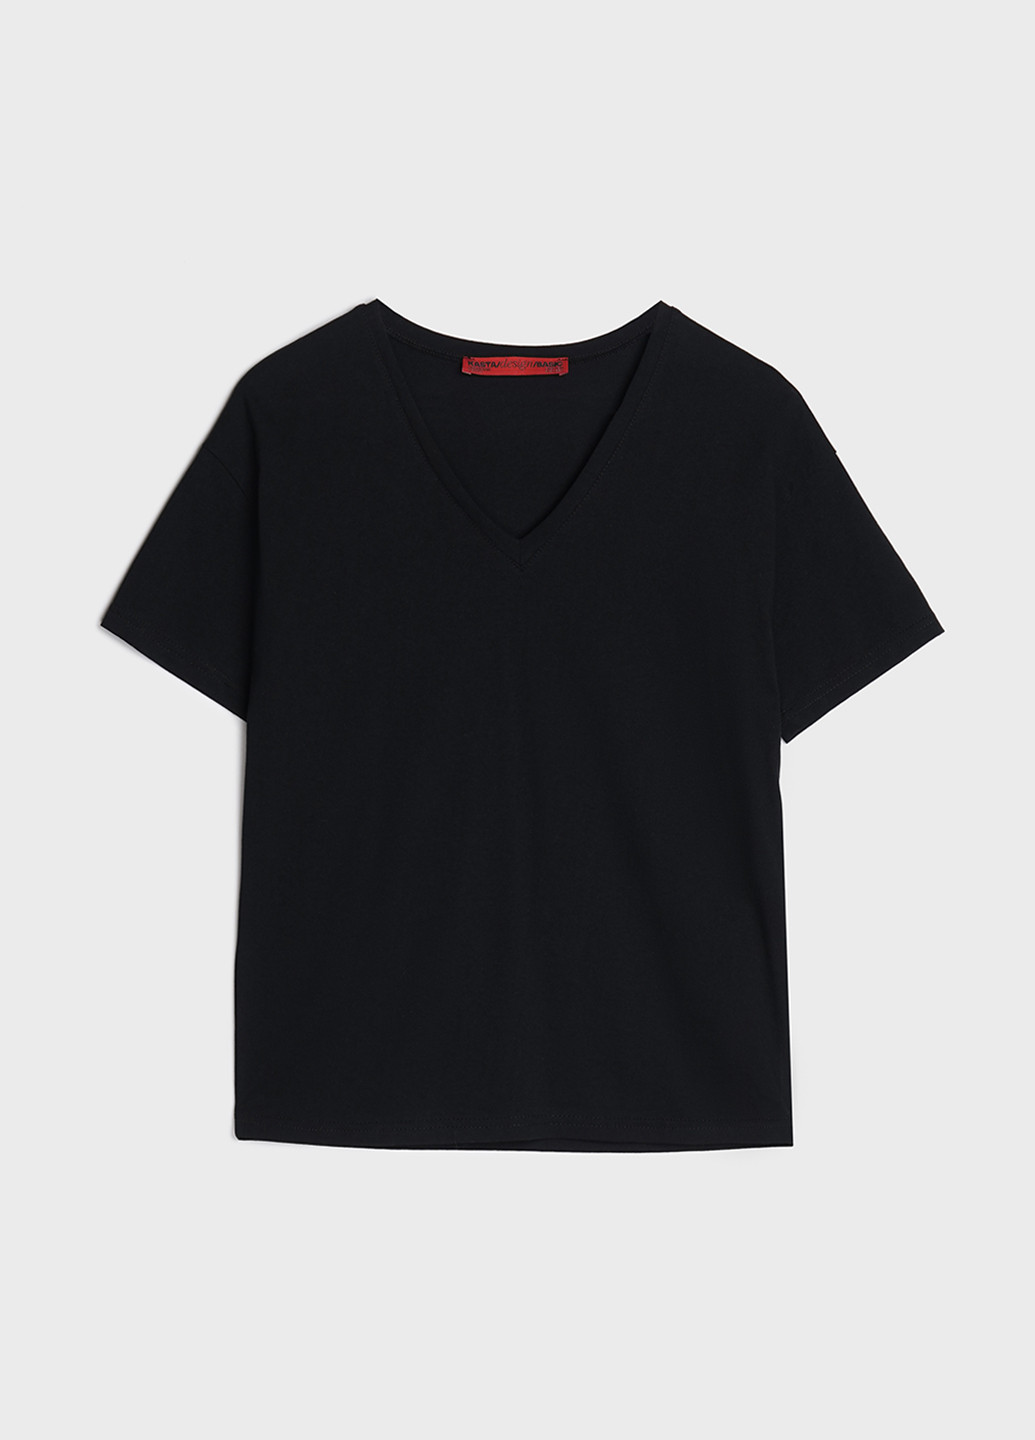 Черная летняя футболка з v-образным вырезом KASTA design